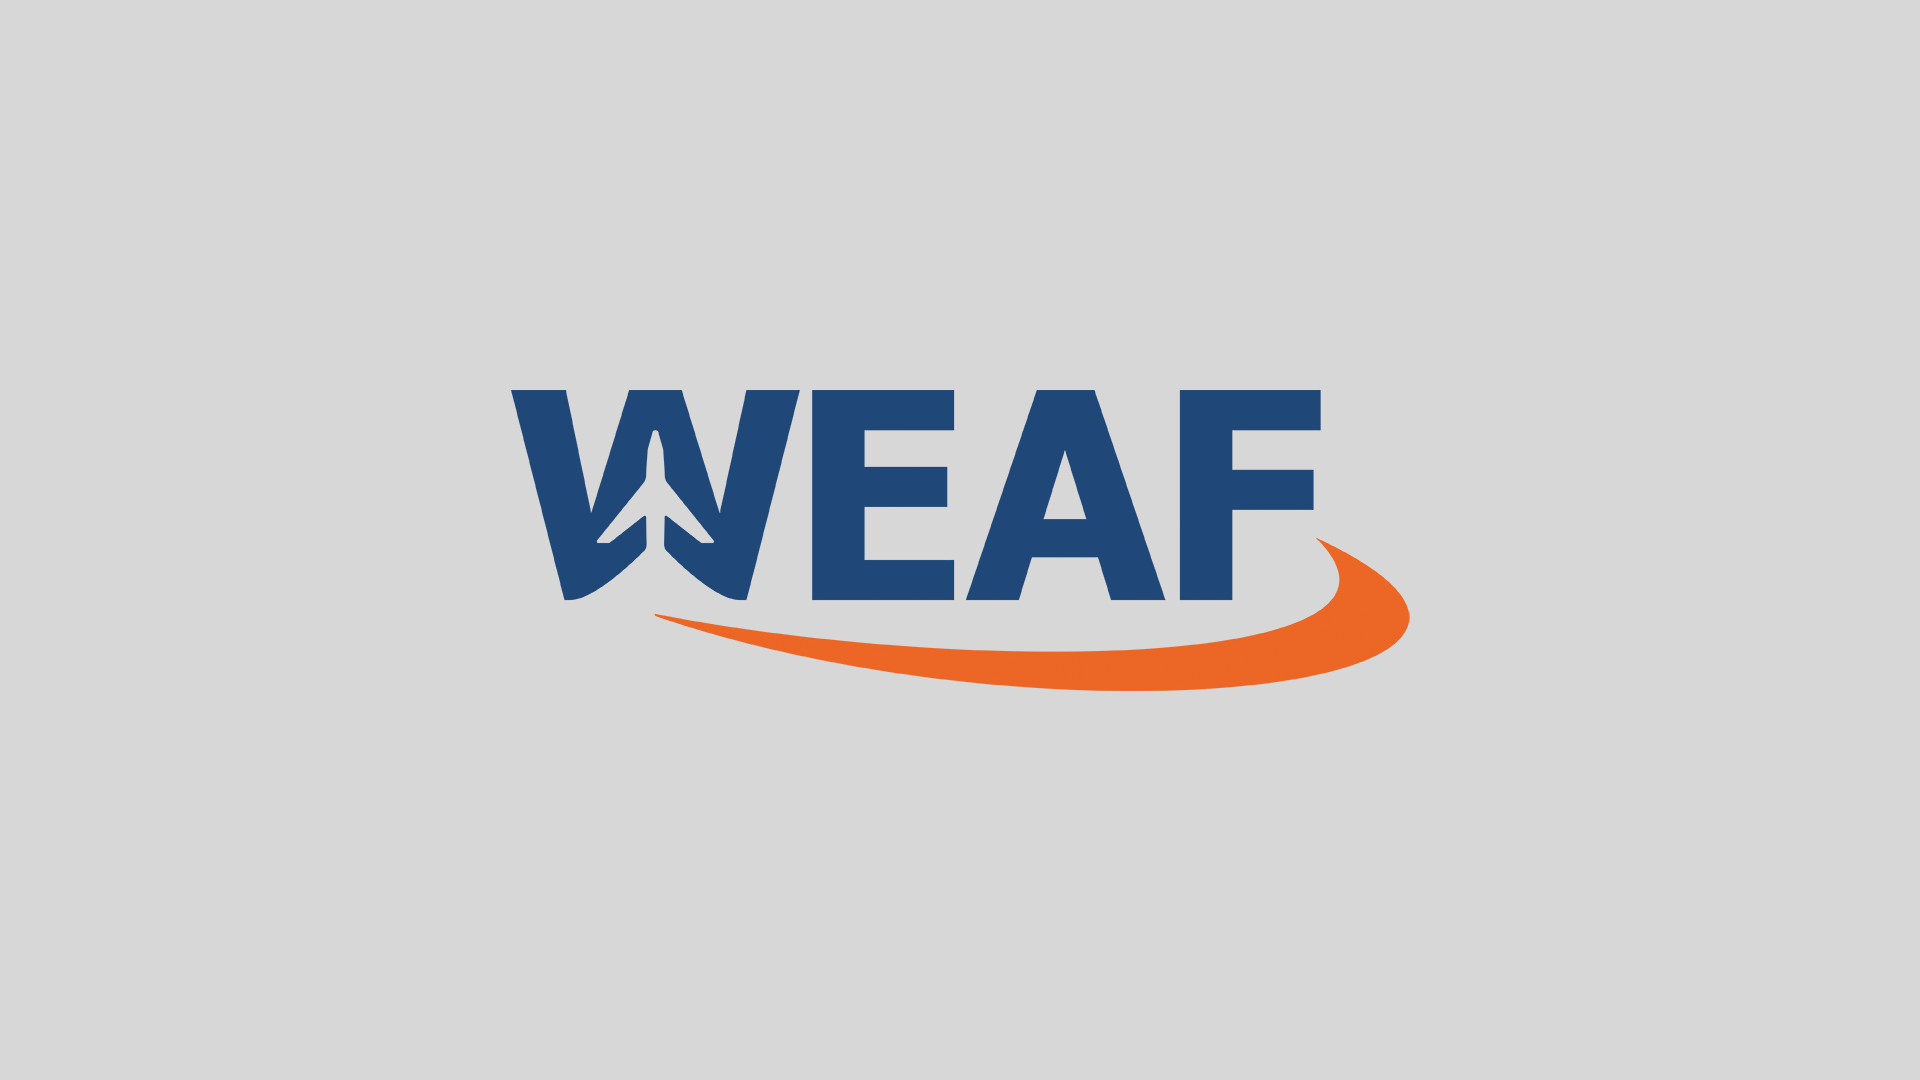 (c) Weaf.co.uk